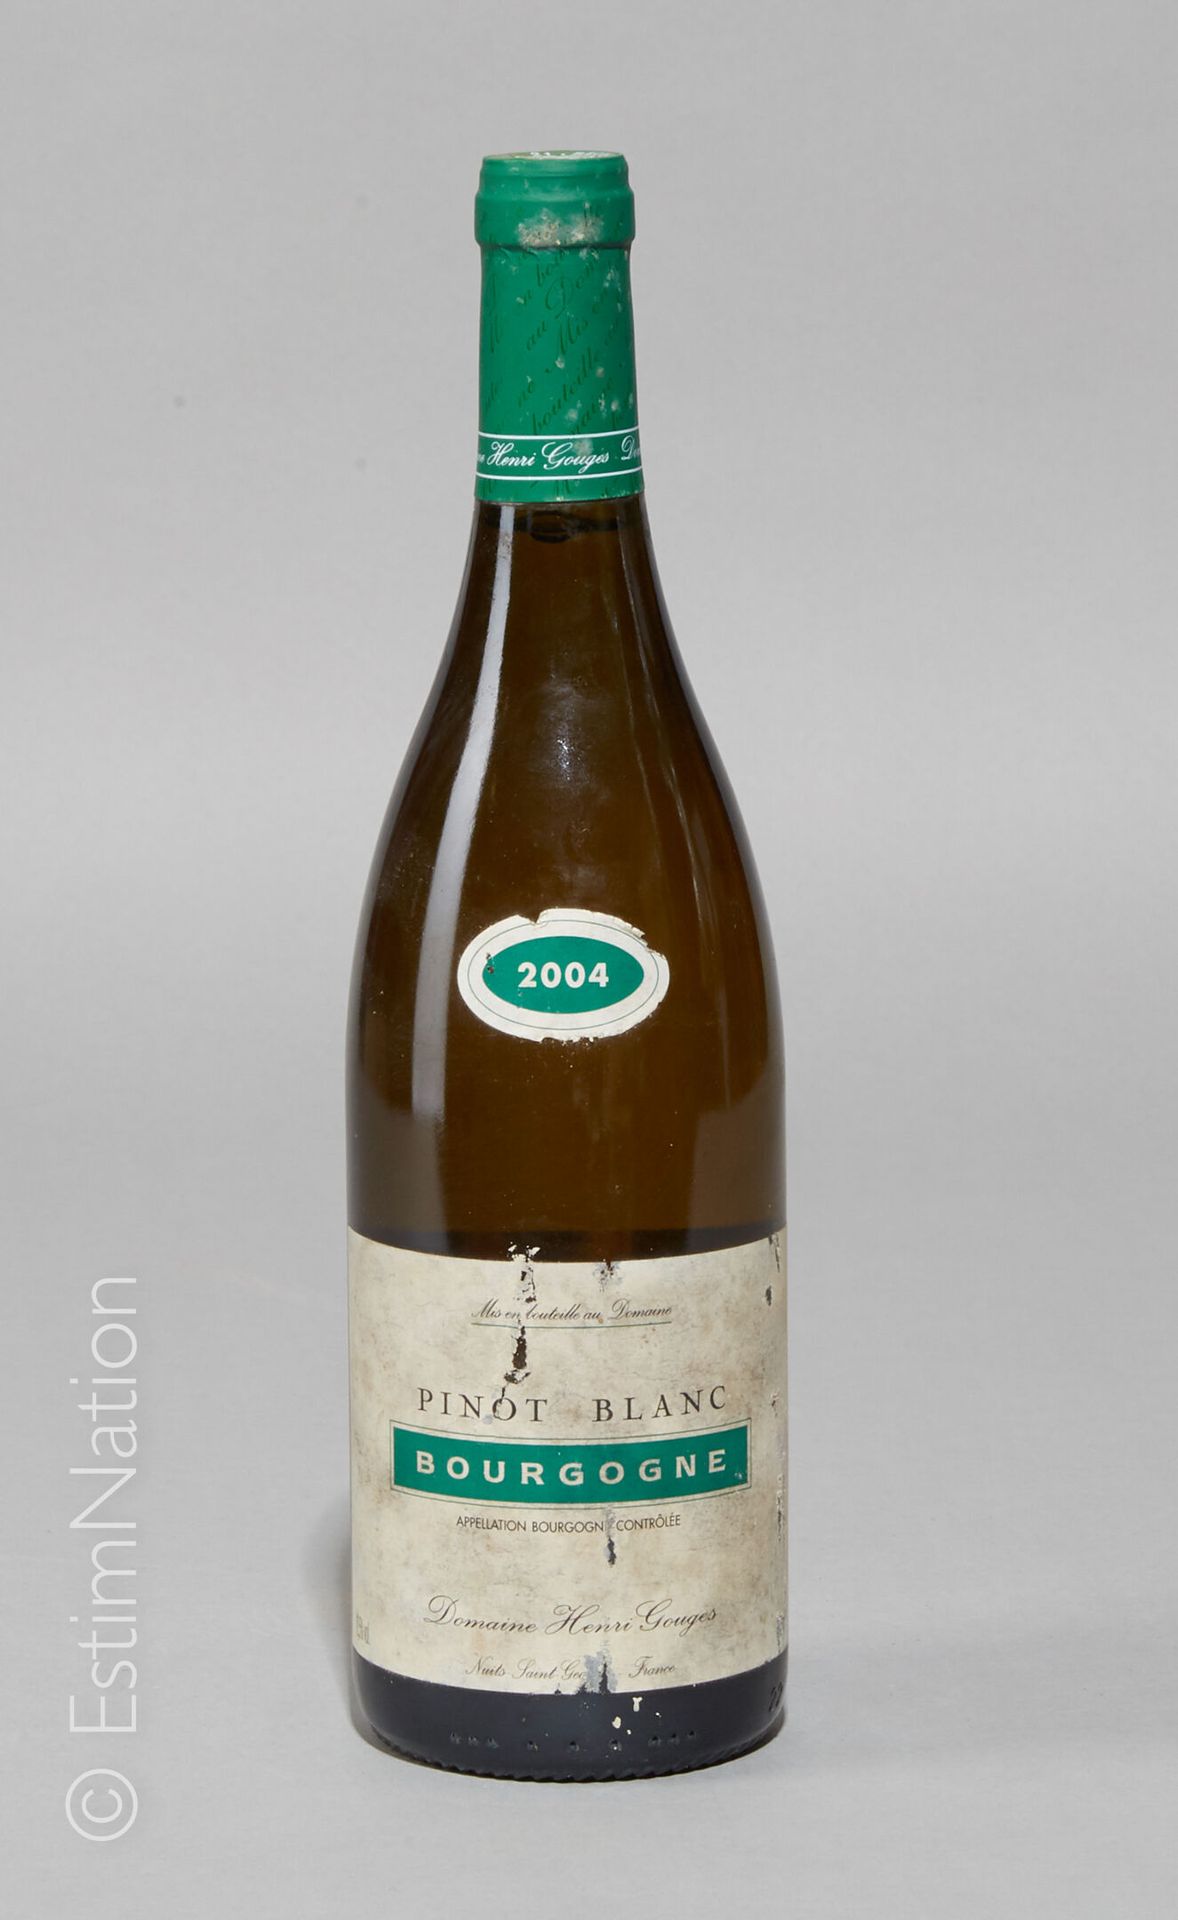 BOURGOGNE 1 botella Bourgogne 2004 (Pinot Blanc) Domaine Henri Gouges